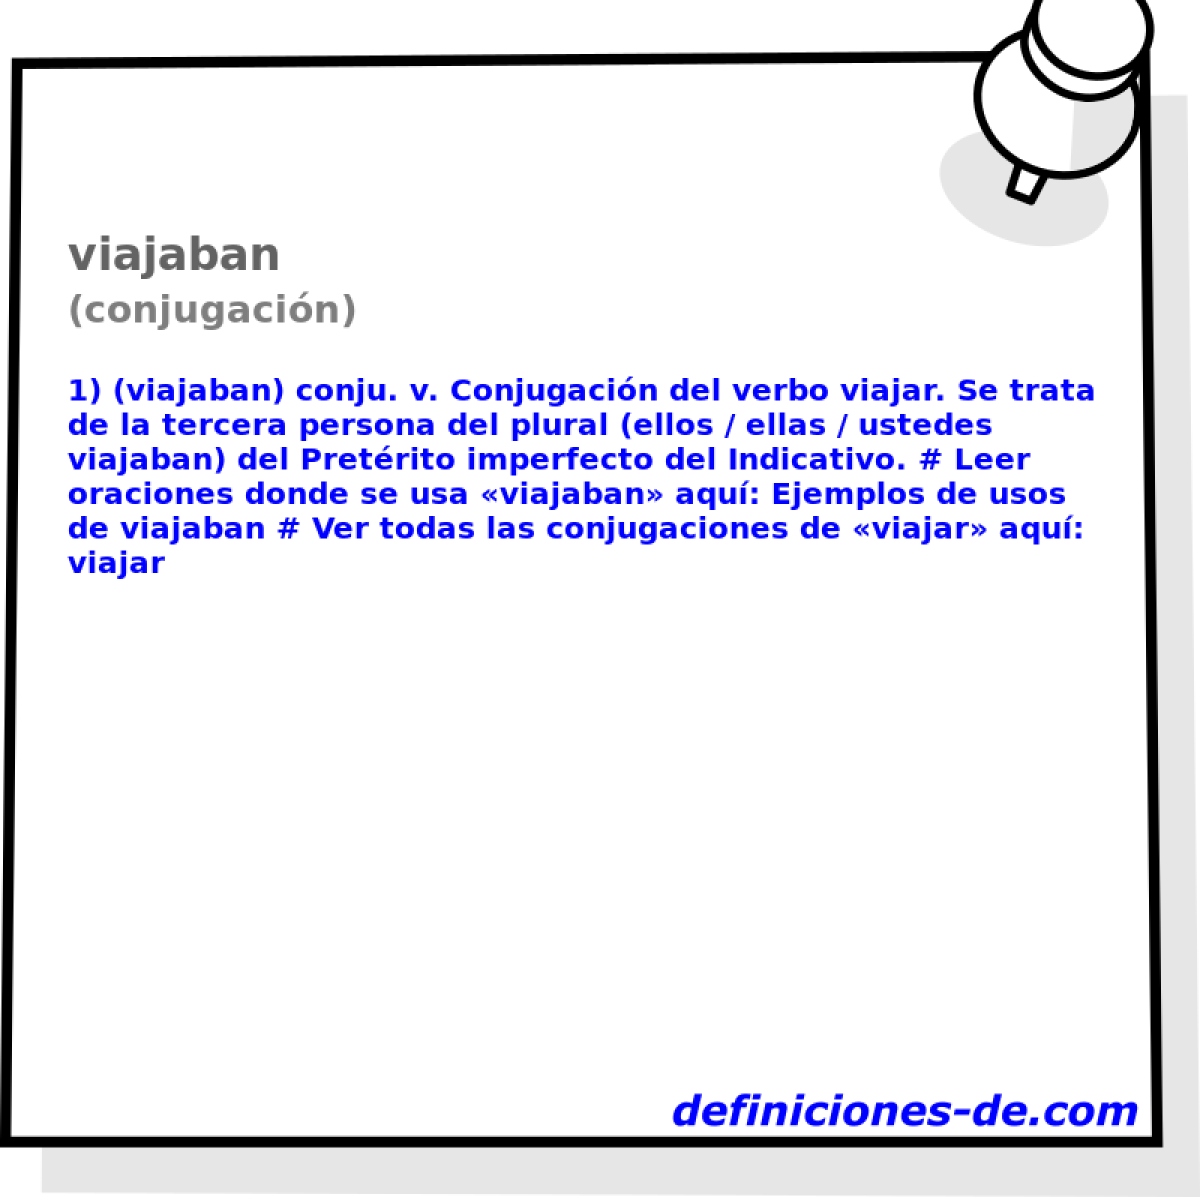 viajaban (conjugacin)